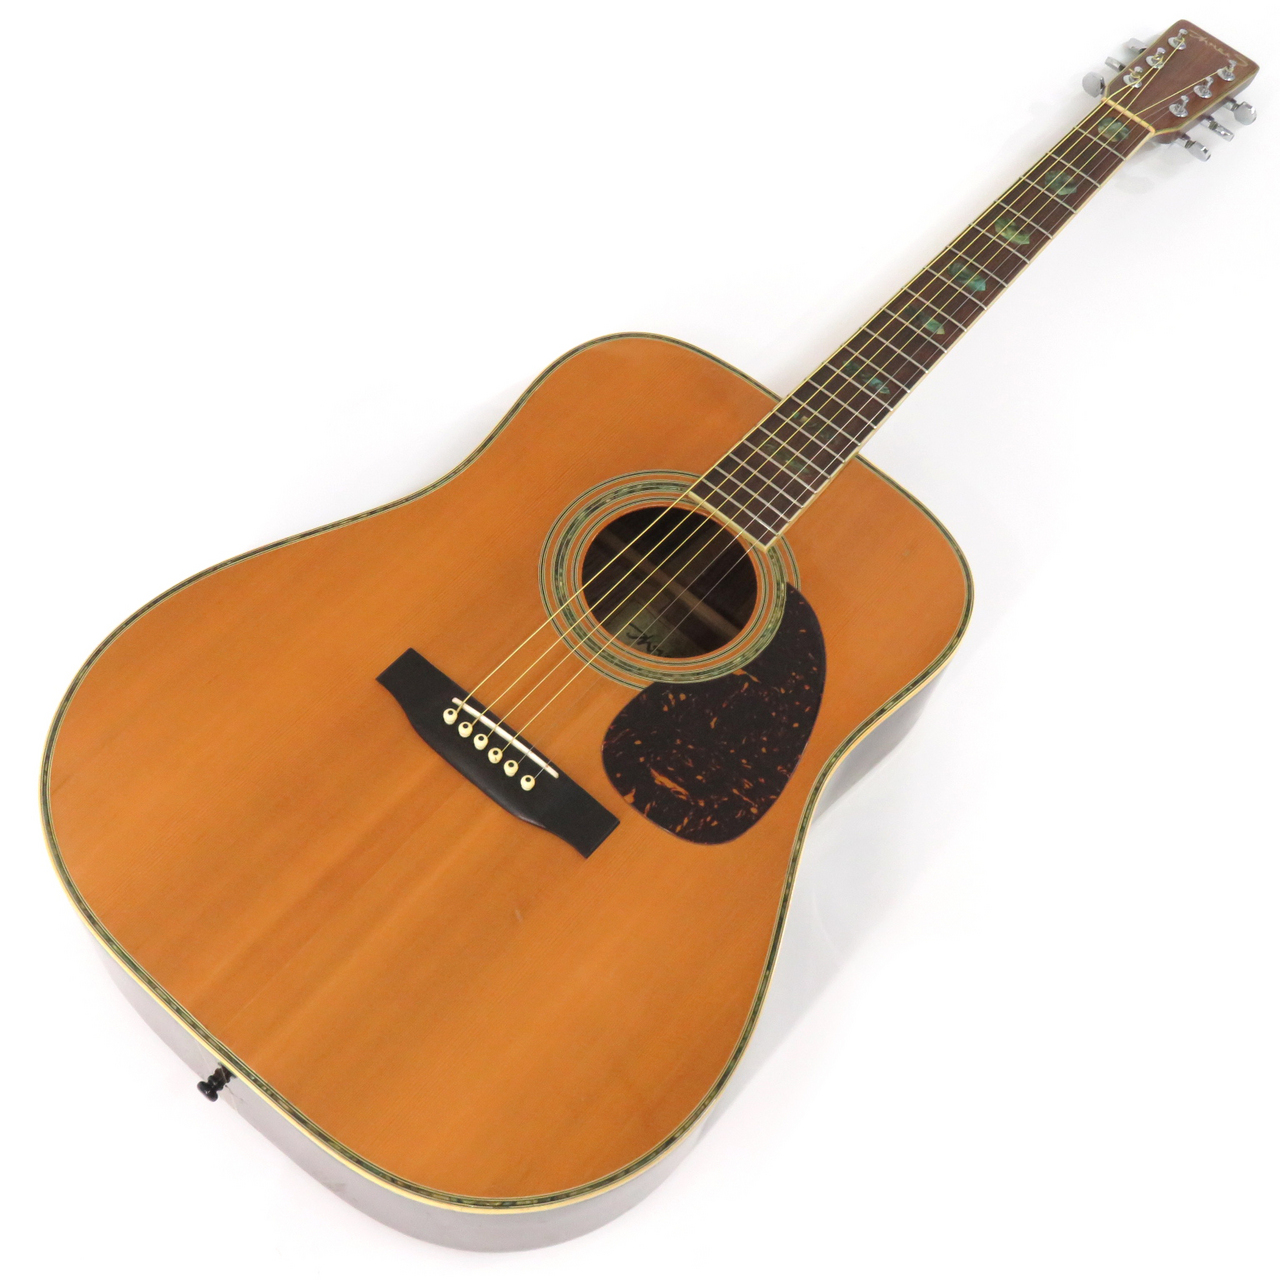 12弦アコースティックギター Three S EST1887 12弦ギター